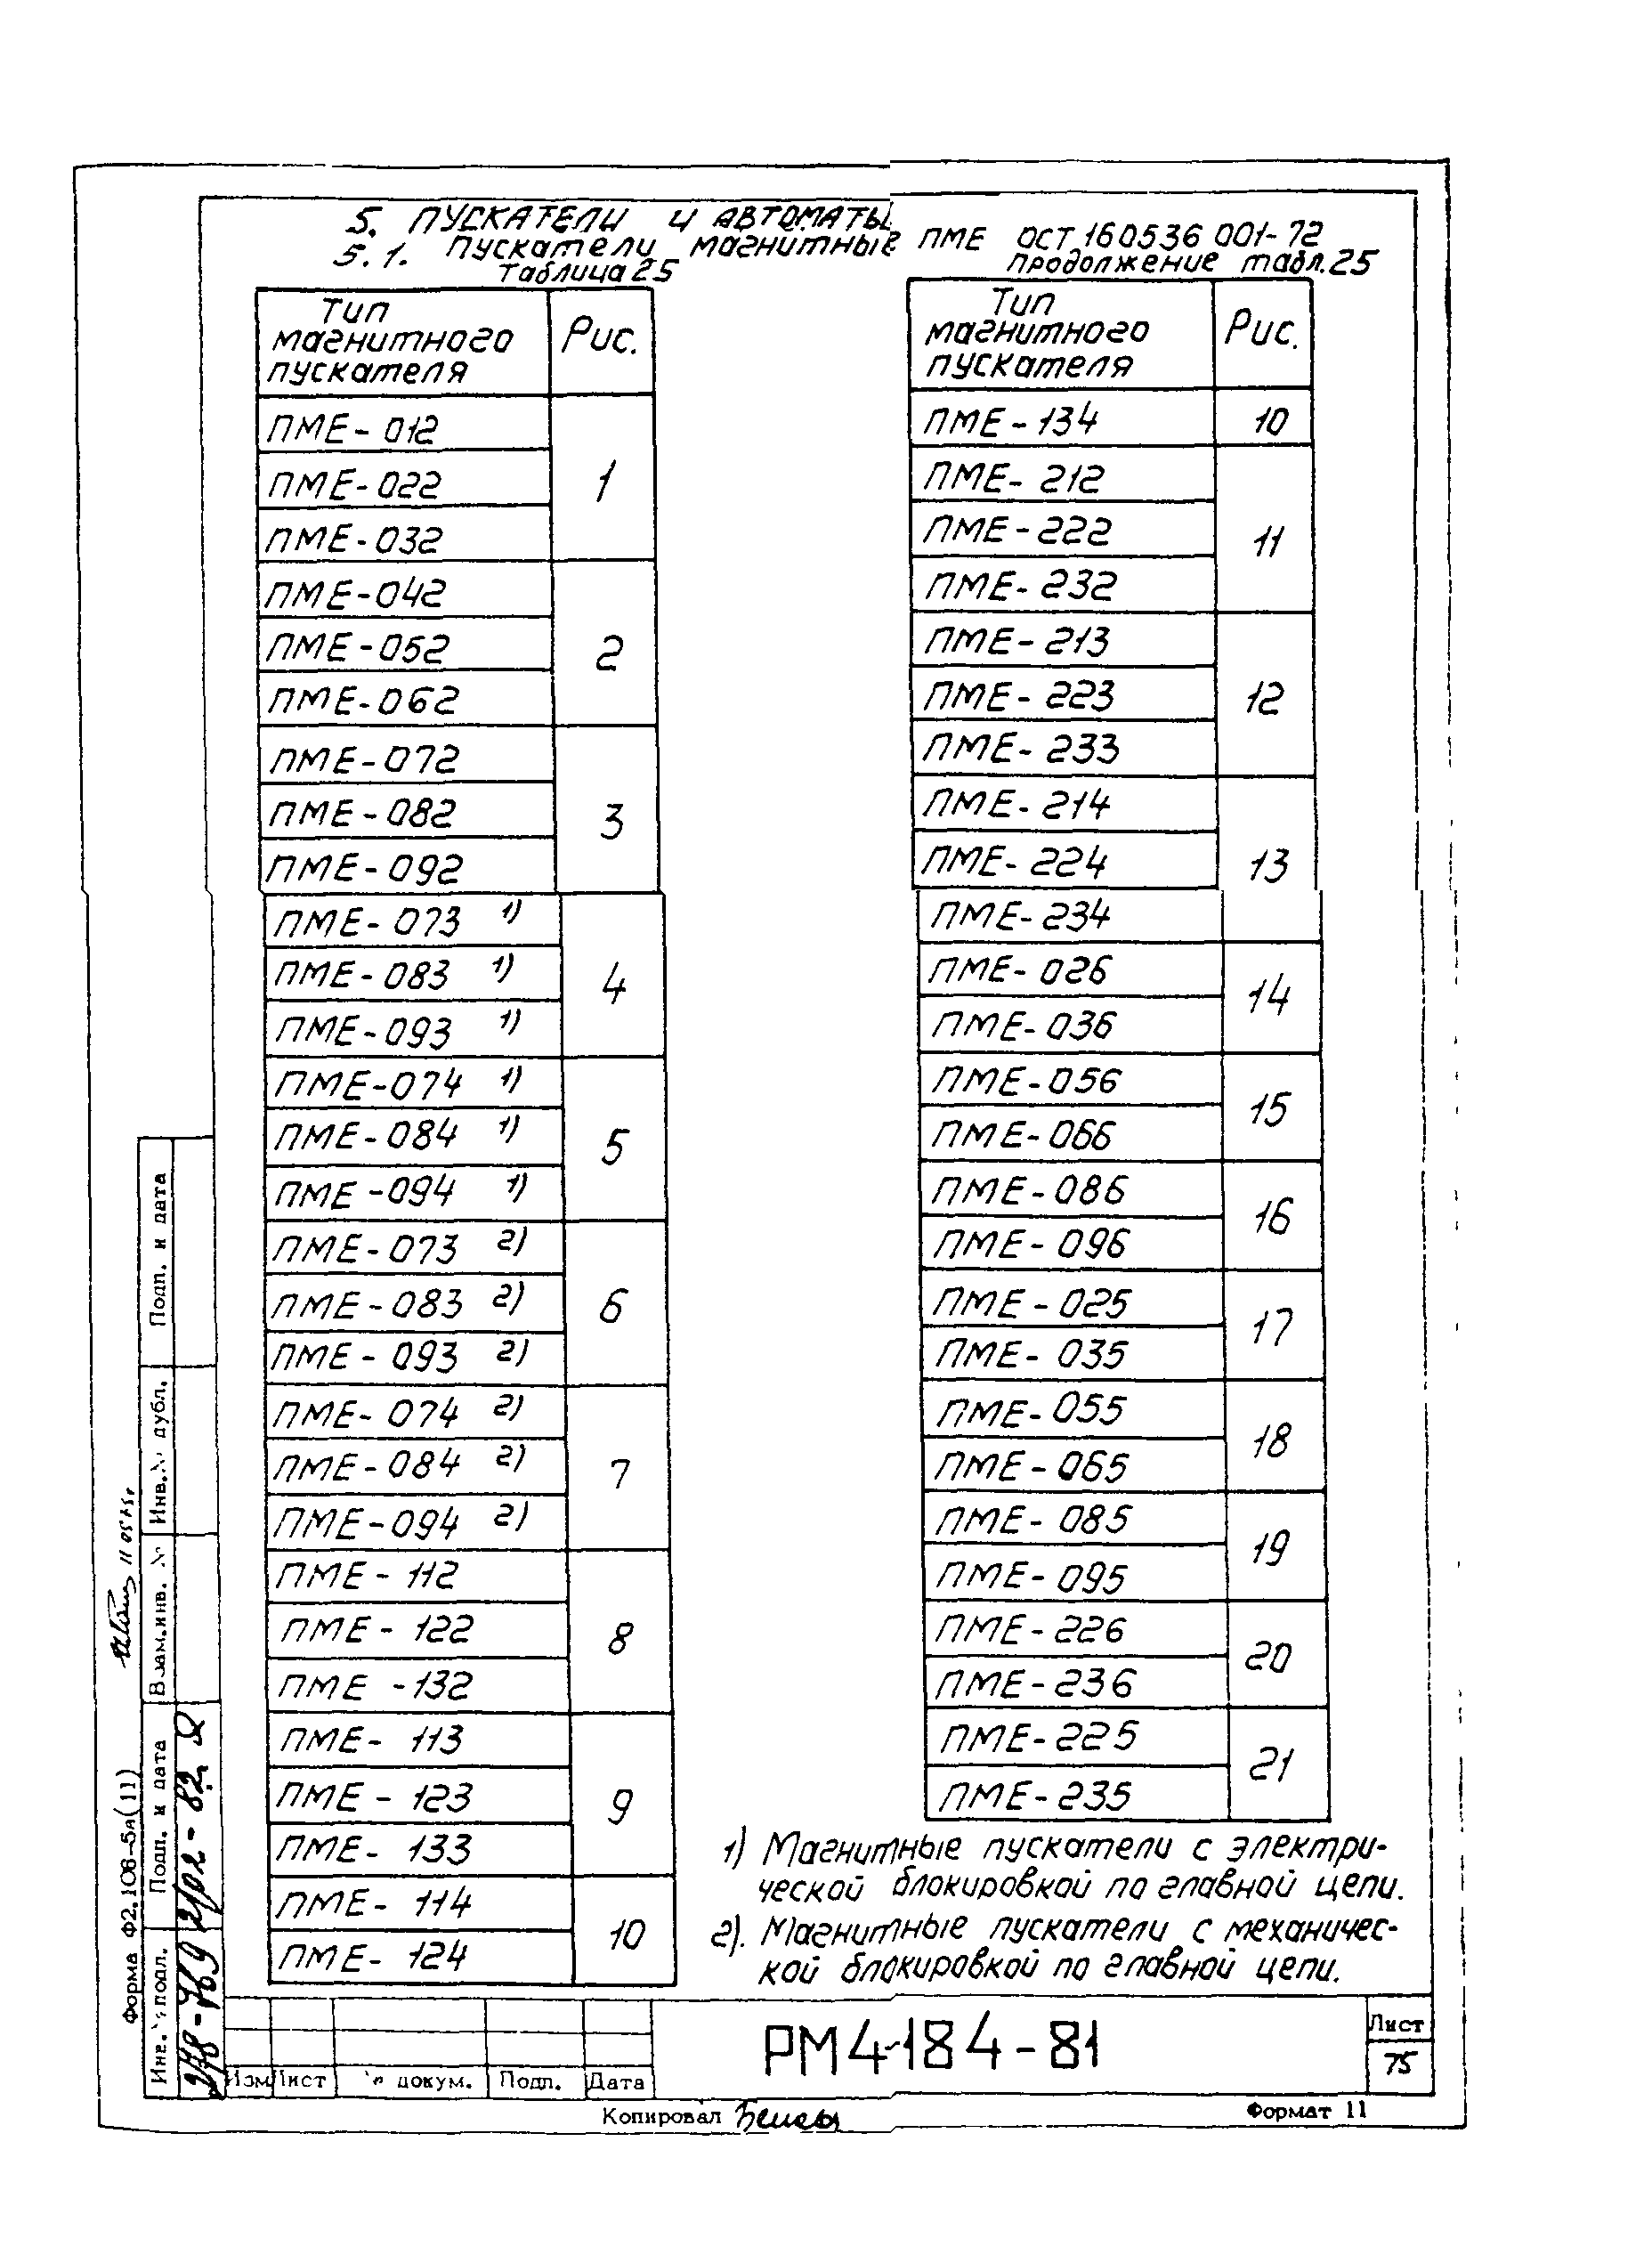 РМ 4-184-81